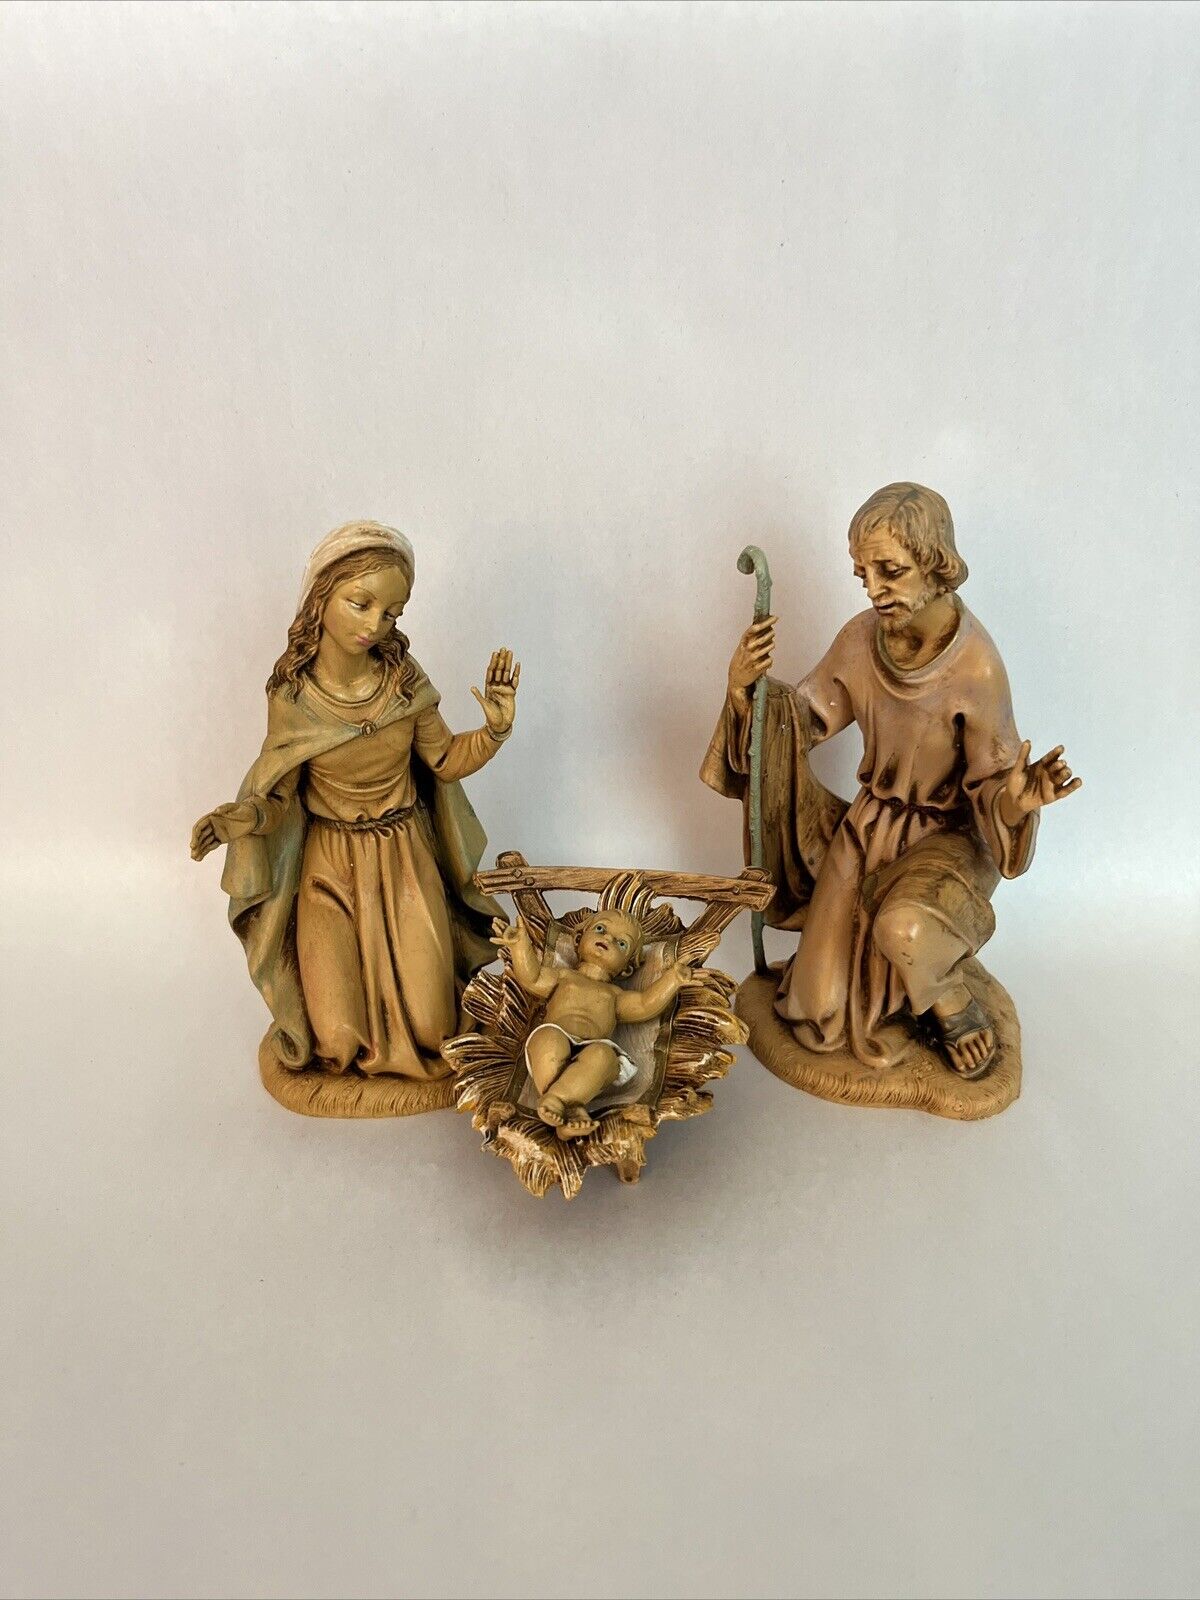 1983 Fontanini Nativity Holy Family Mary Joseph & Baby Jesus Manger  7.5